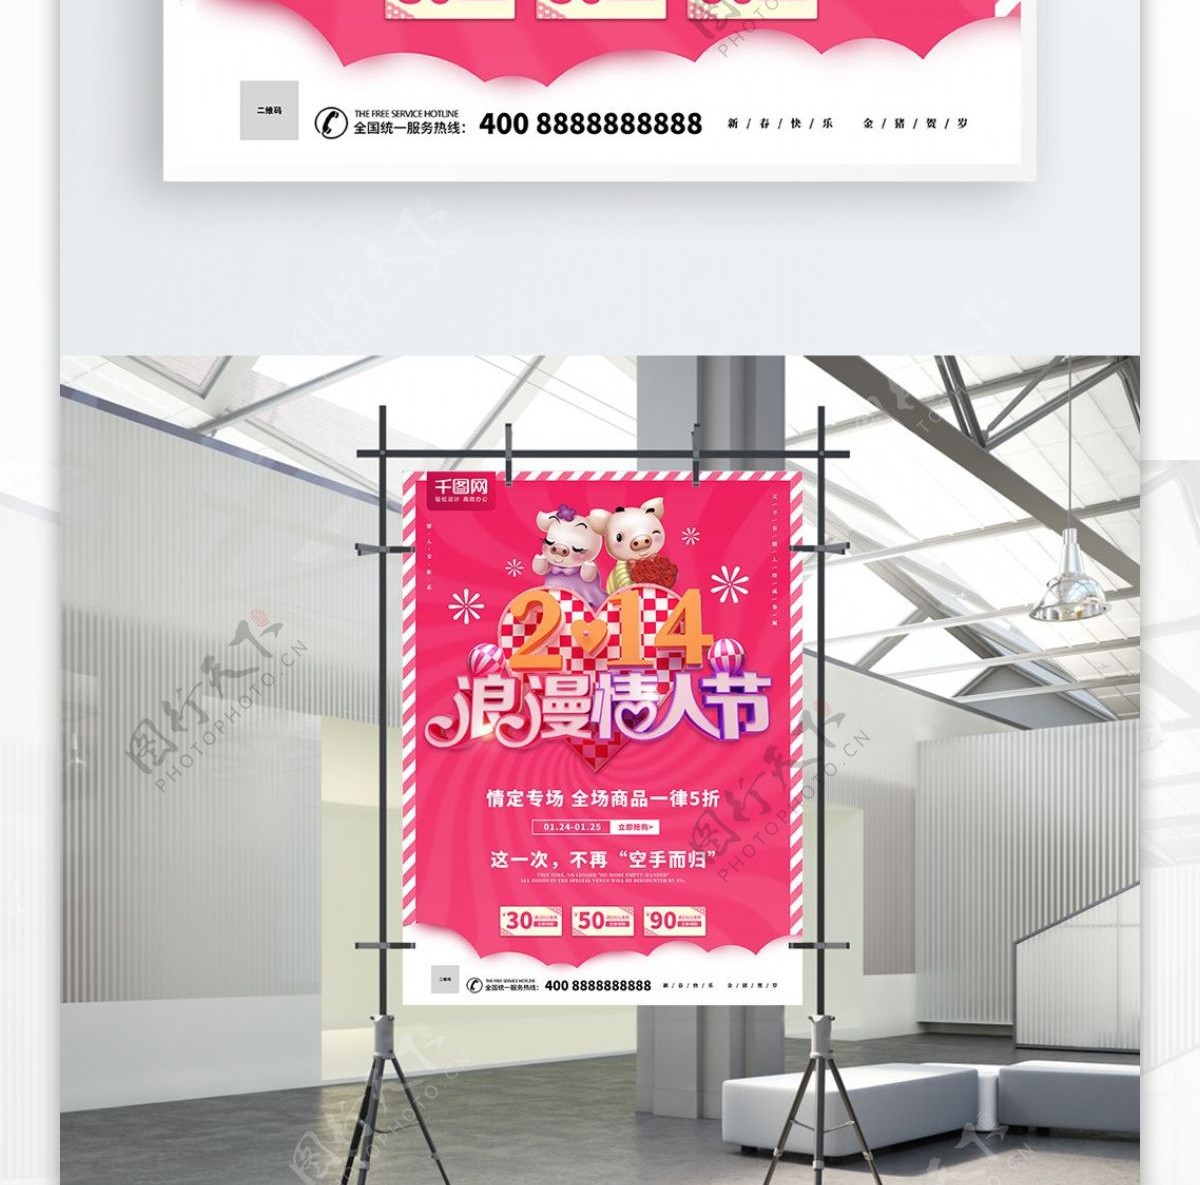 C4D创意粉色214浪漫情人节促销海报